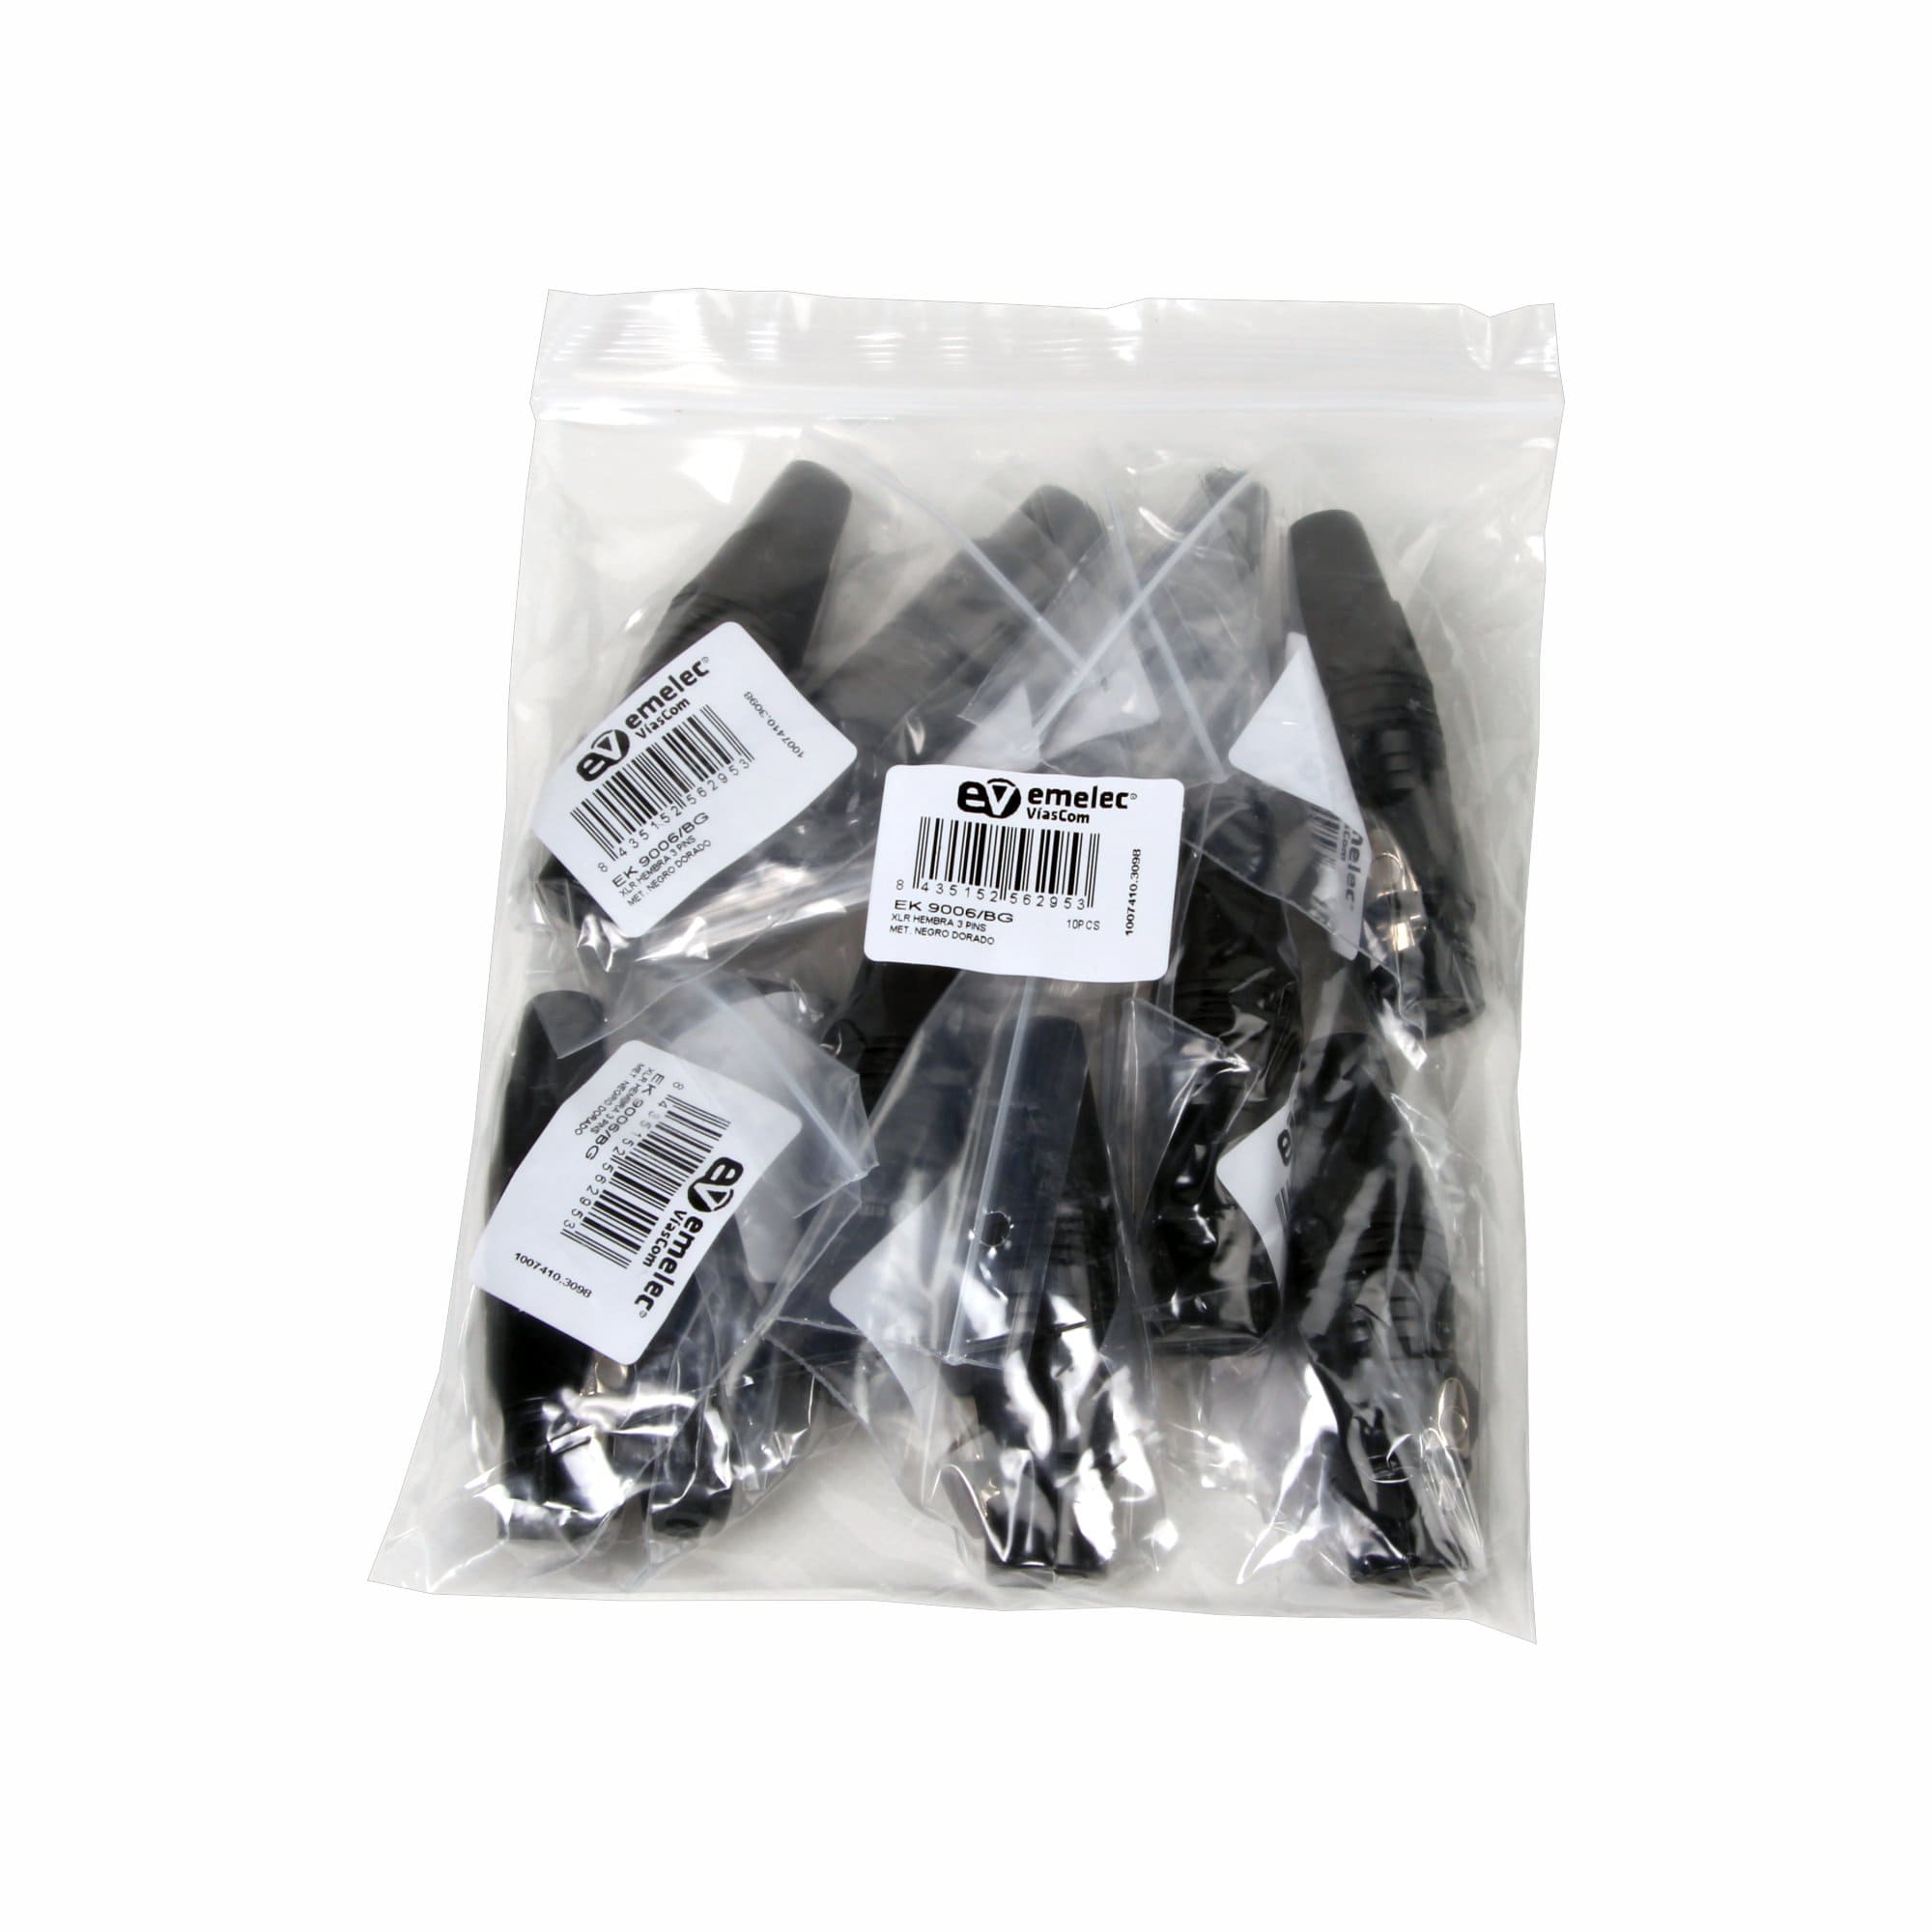 Saco de plástico com 10 conectores fêmea XLR pretos da Emelec ViaCom